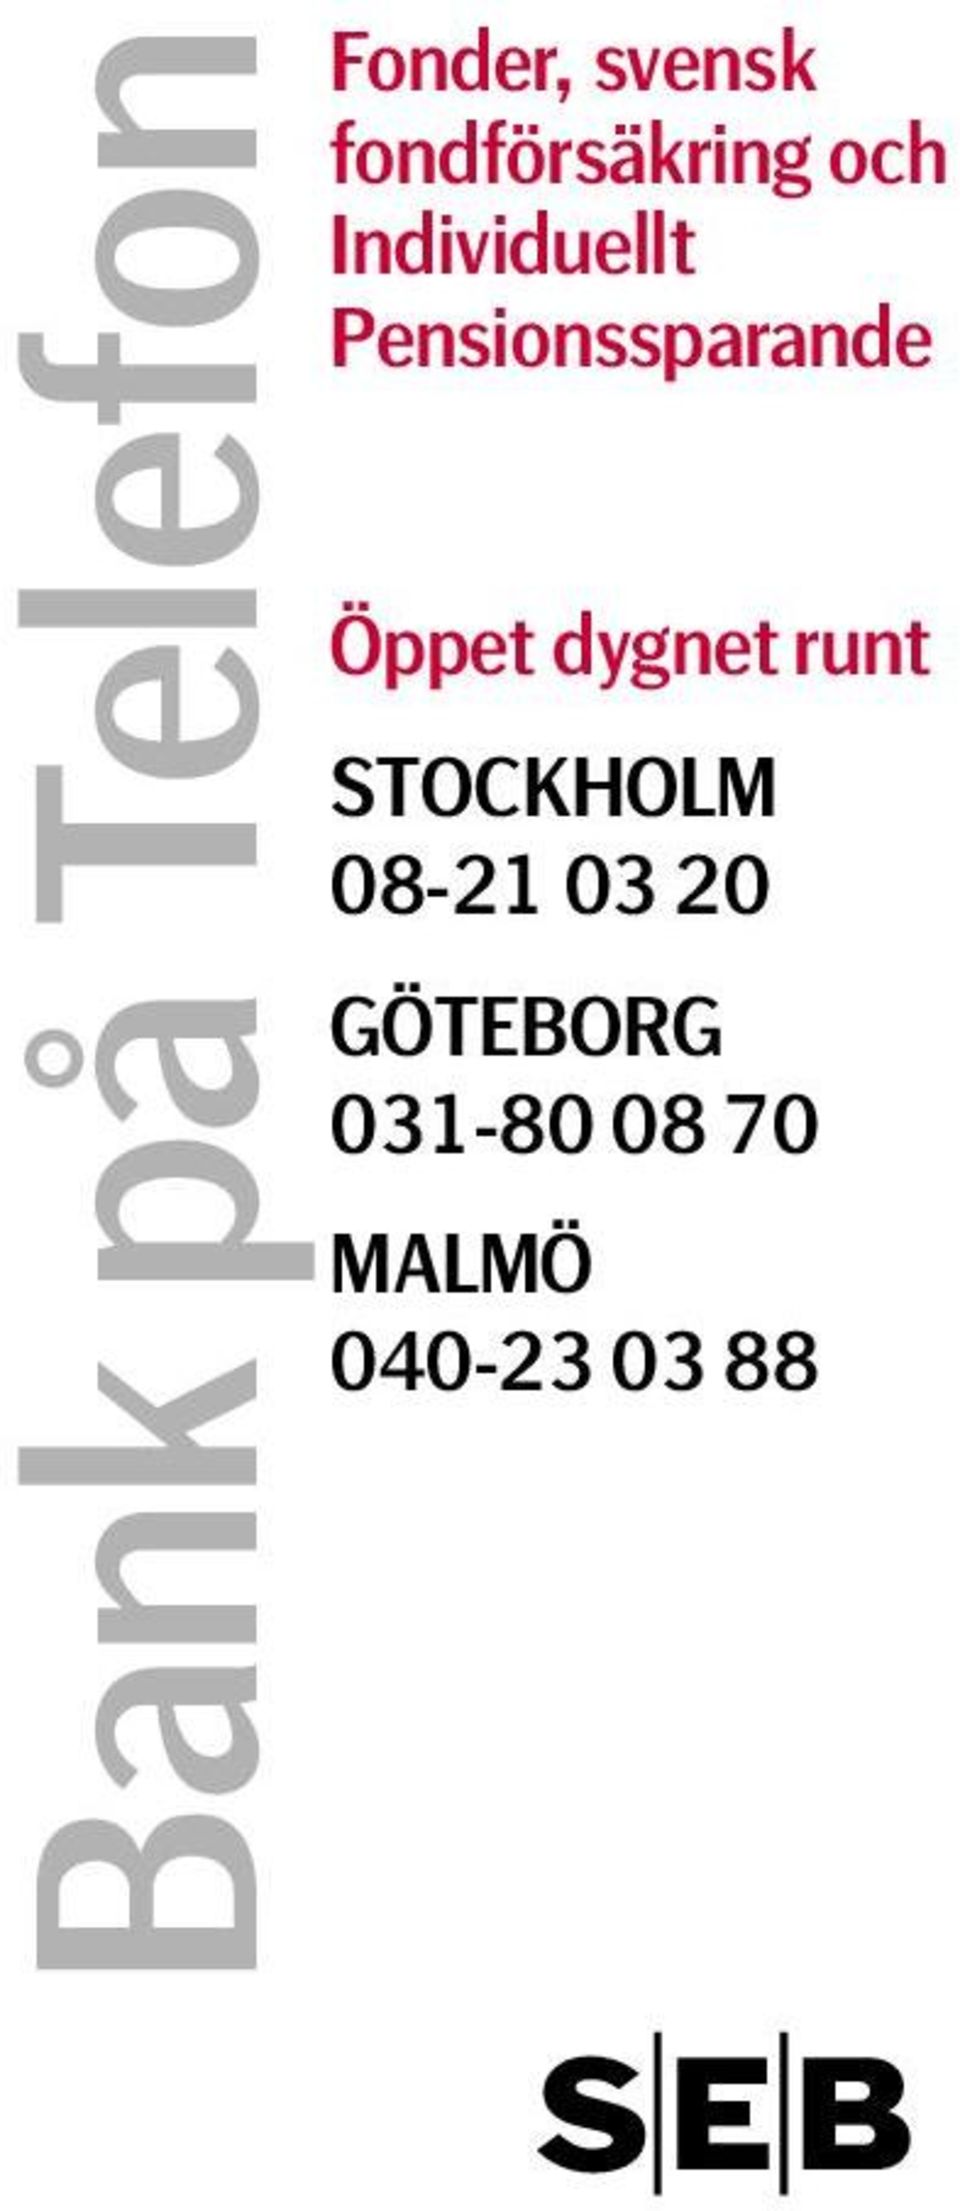 dygnet runt STOCKHOLM 08-21 03 20